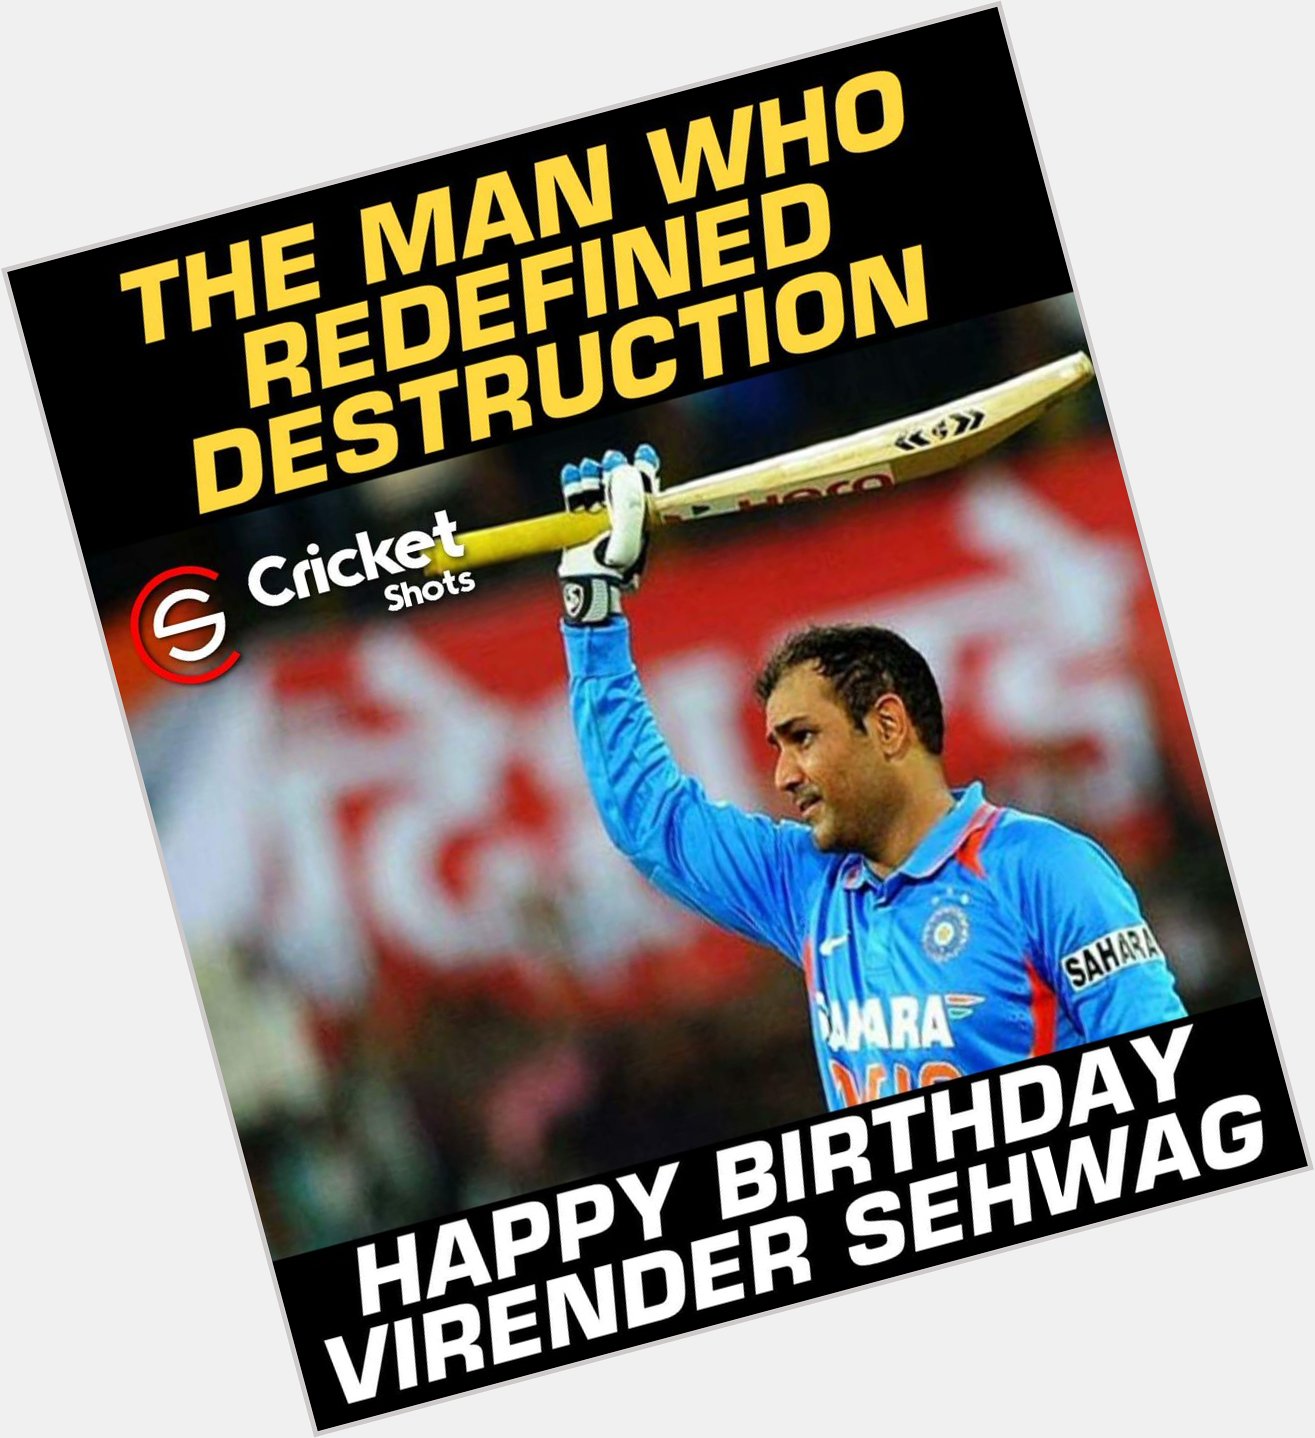 Happy Birthday, Virender Sehwag!! 